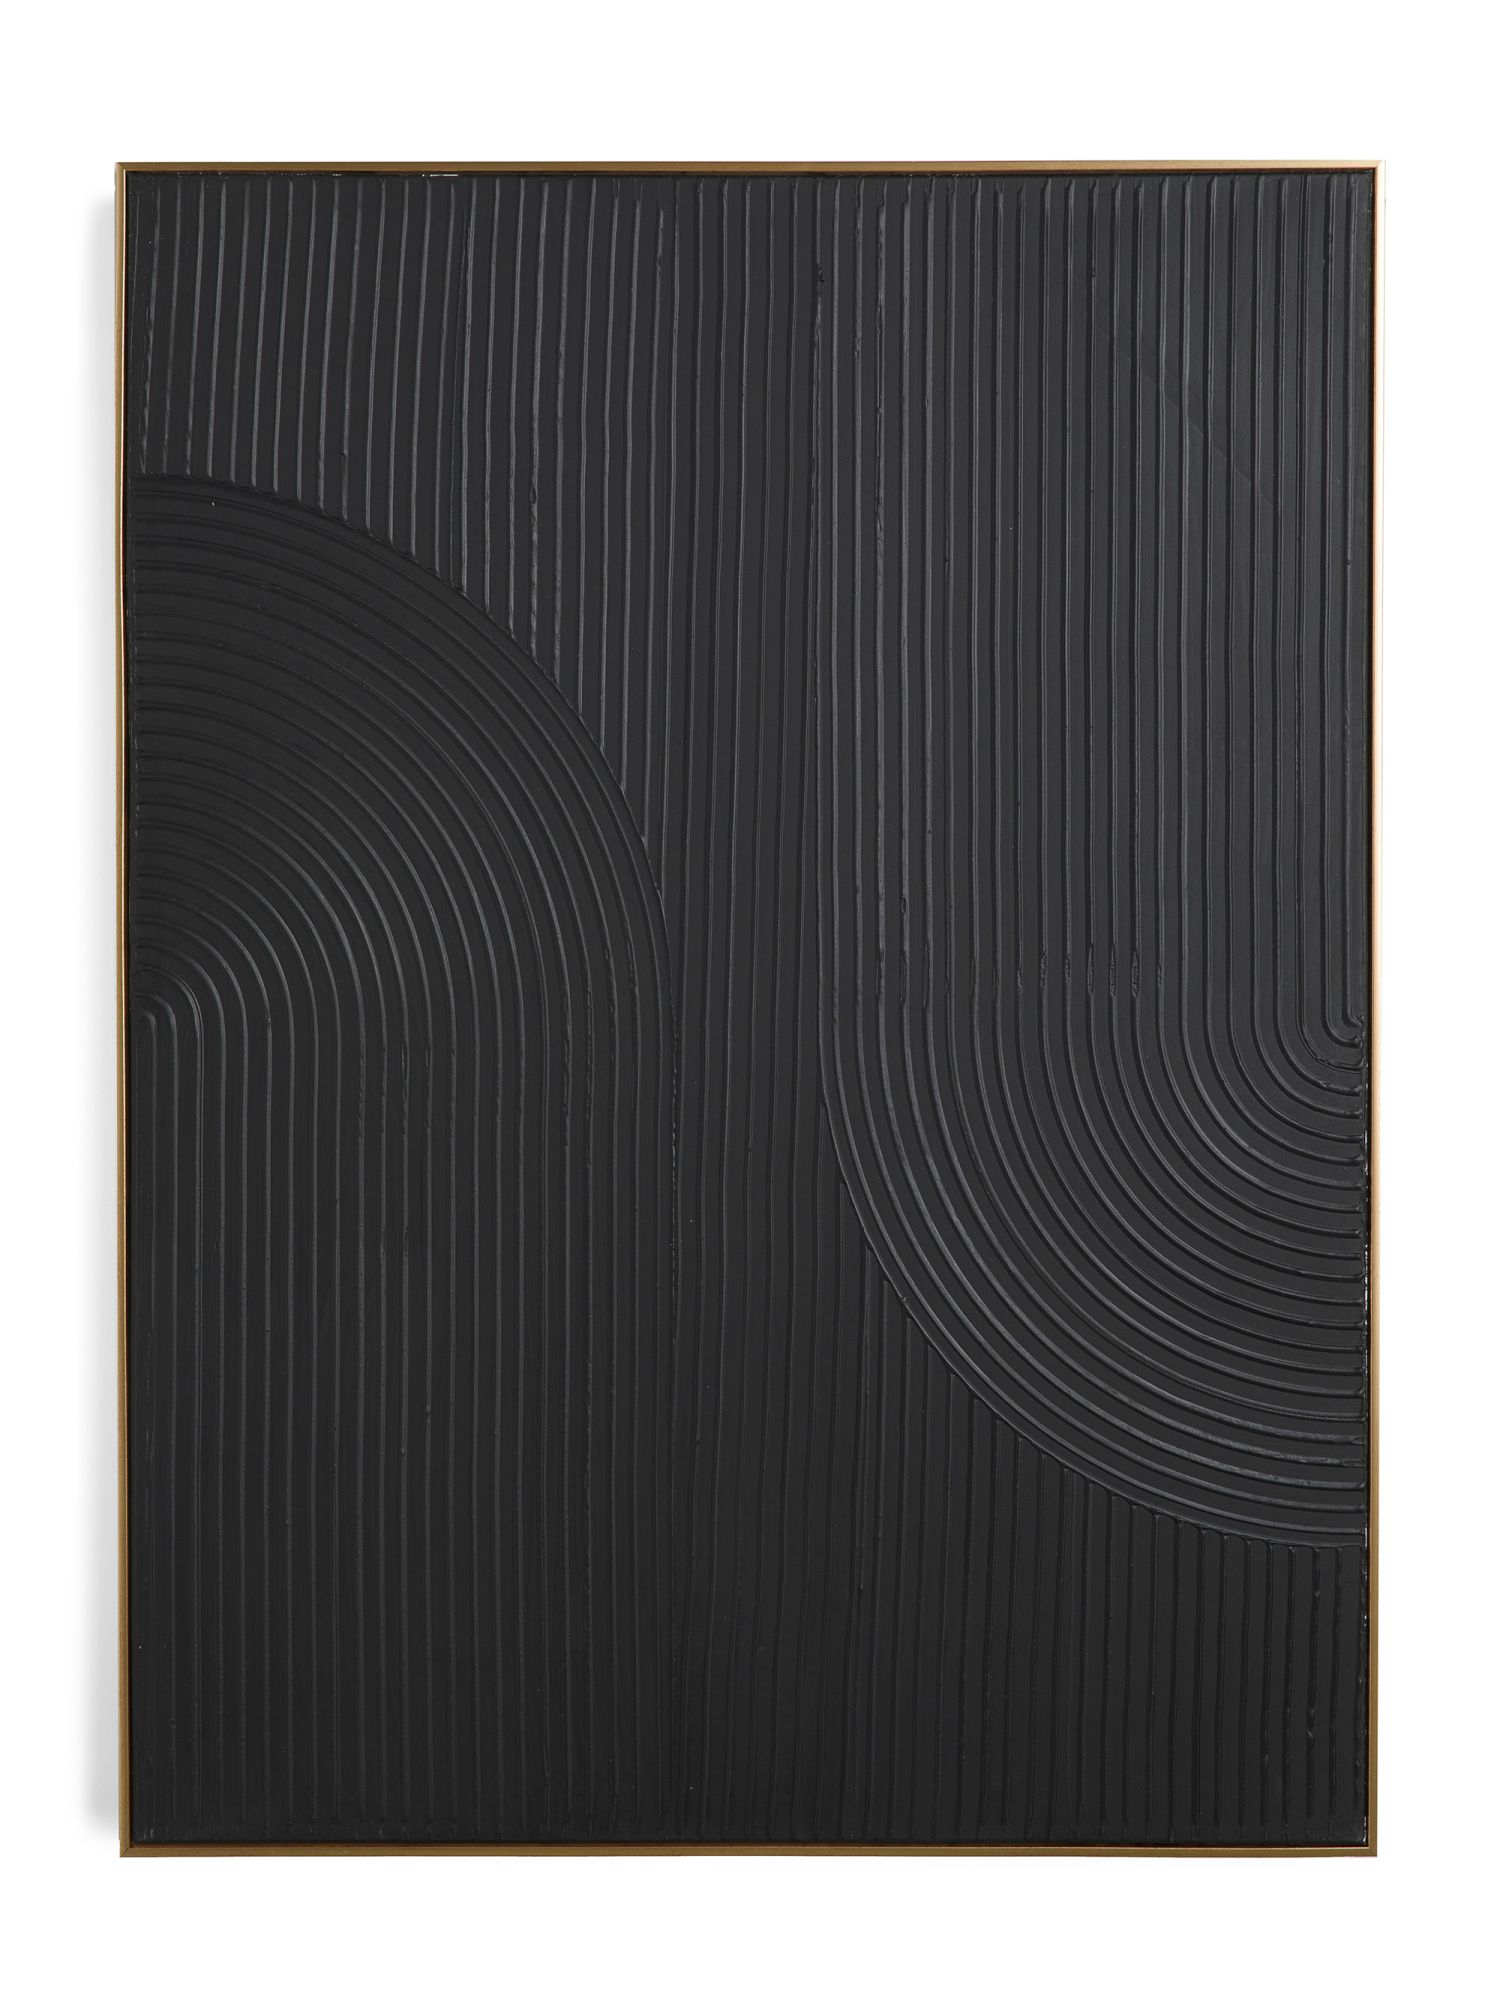 30x40 Rainbow Plaster Reflection Black Wall Art | TJ Maxx